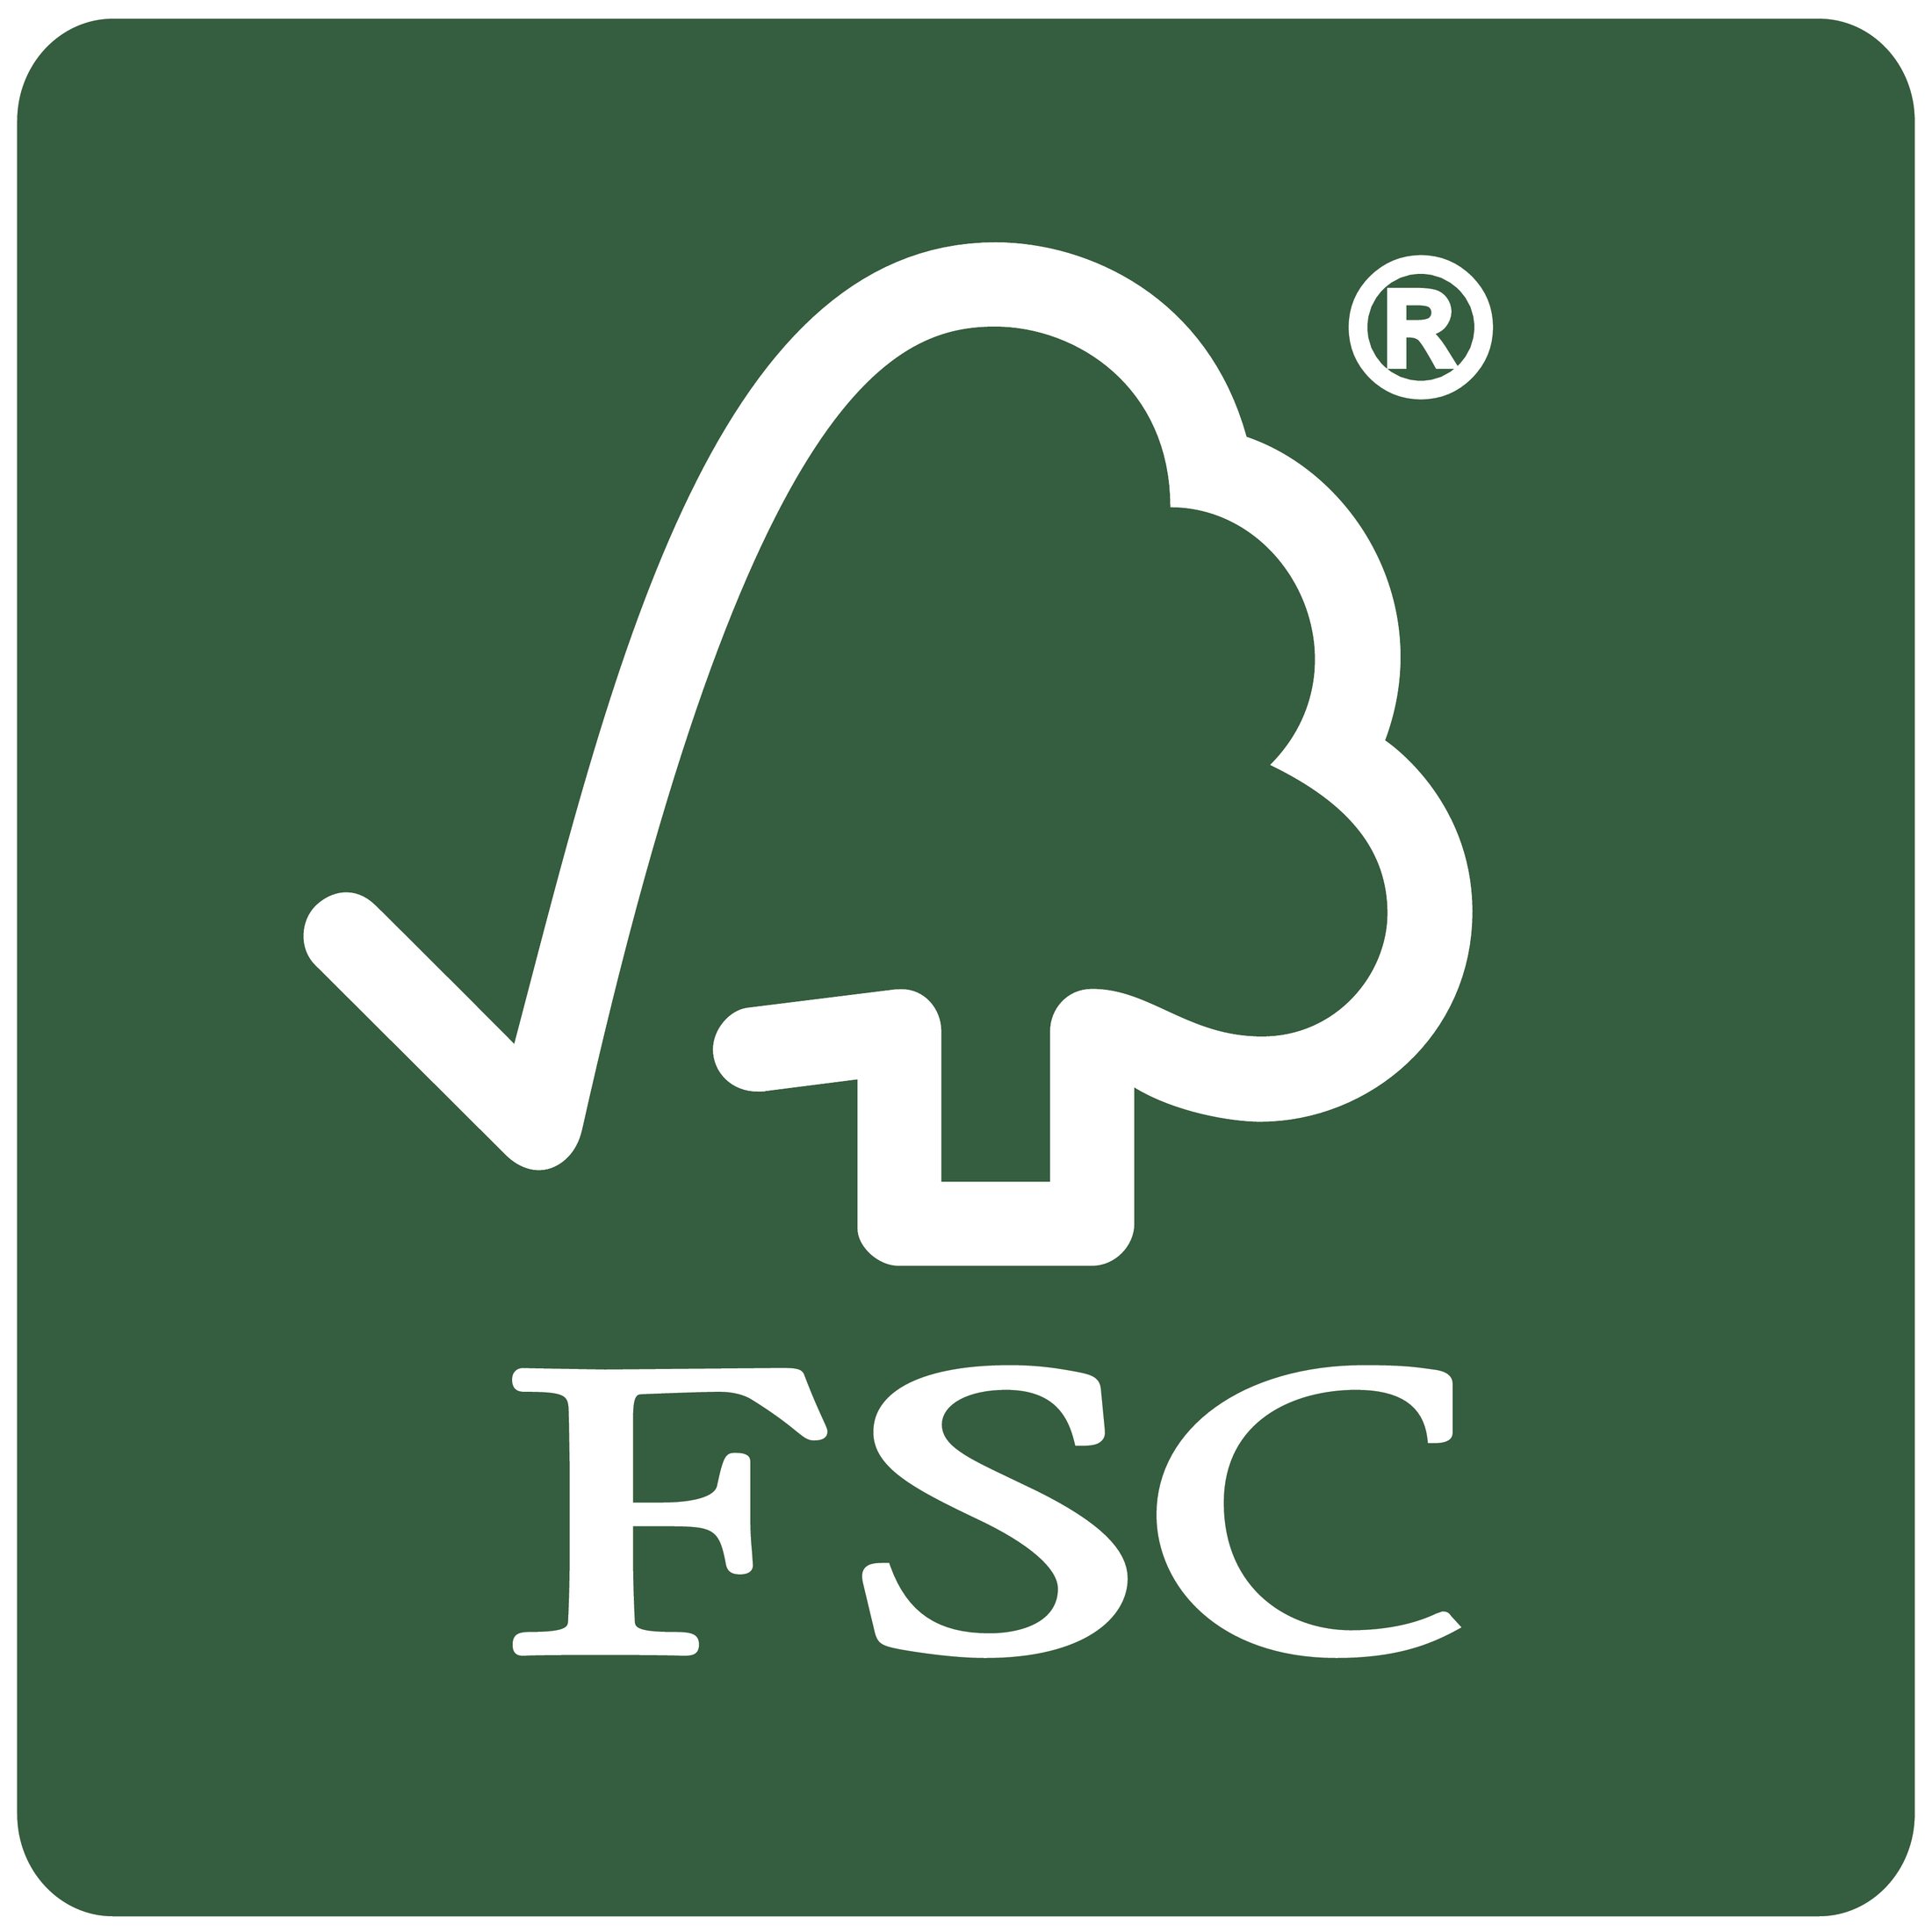 FSC_Svensk stående vit på grön 1.jpg